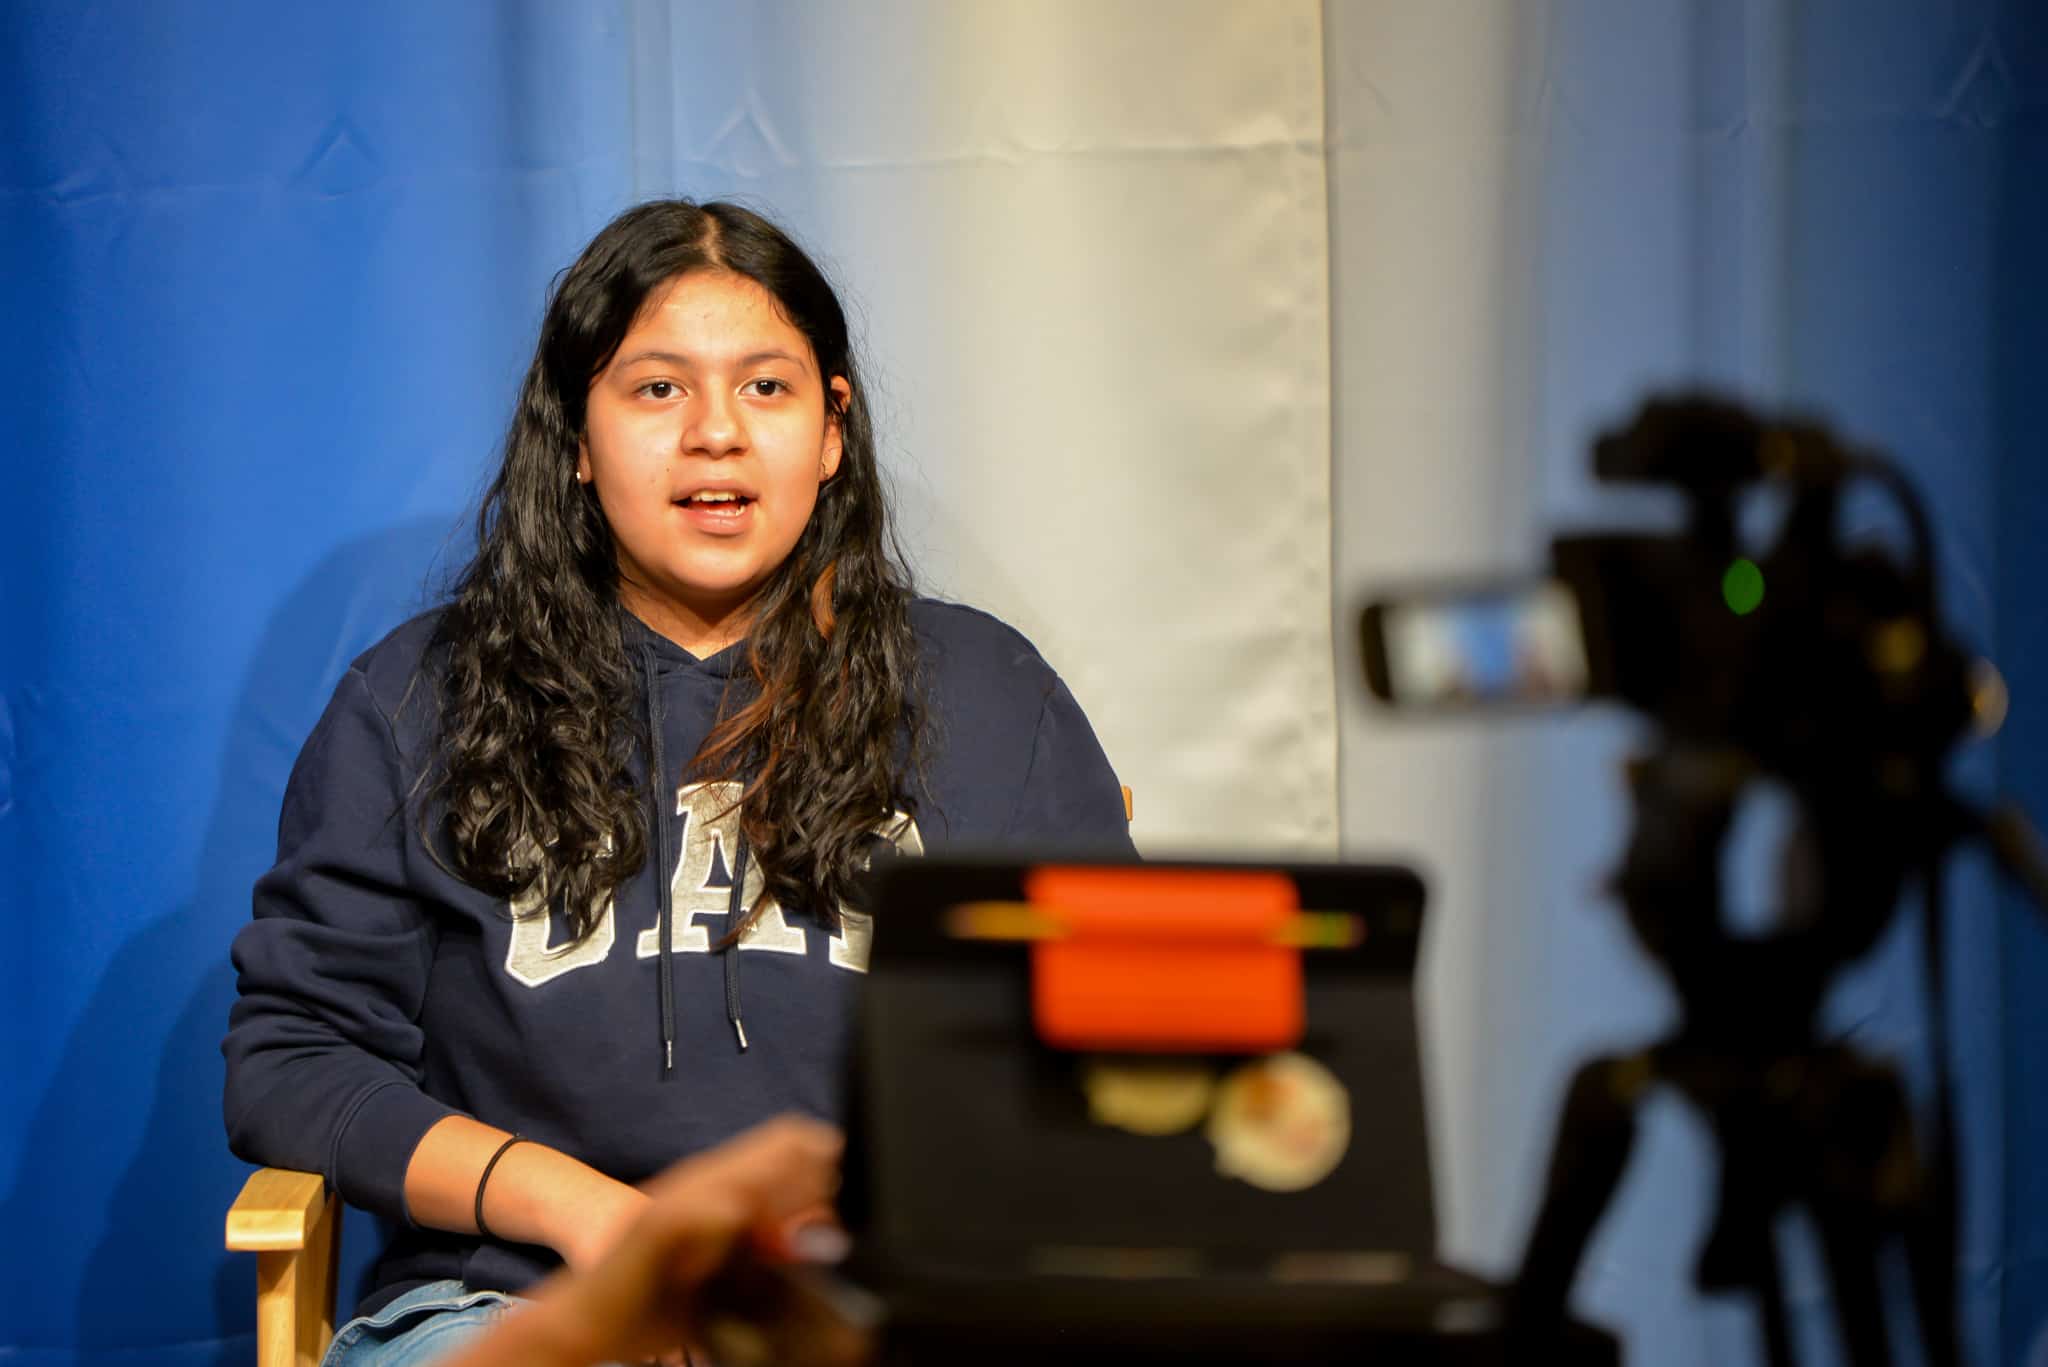 Hembra secundaria estudiante sentado en una silla frente a una cámara. Ella está hablando en cámara durante un noticiero que está siendo grabado.